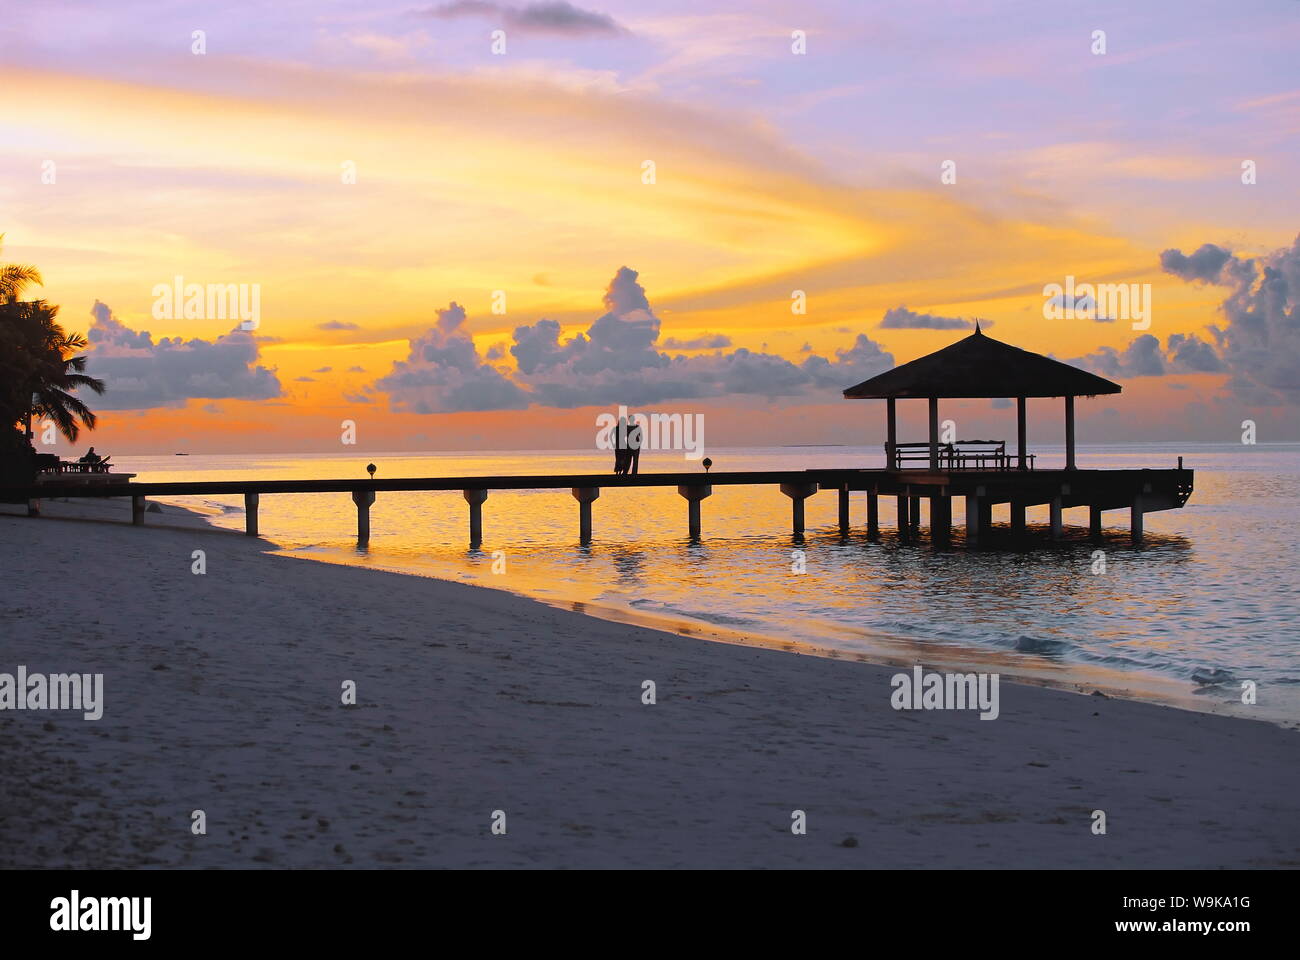 Couple on jetty à au coucher du soleil, les Maldives, l'Océan Indien, l'Asie Banque D'Images